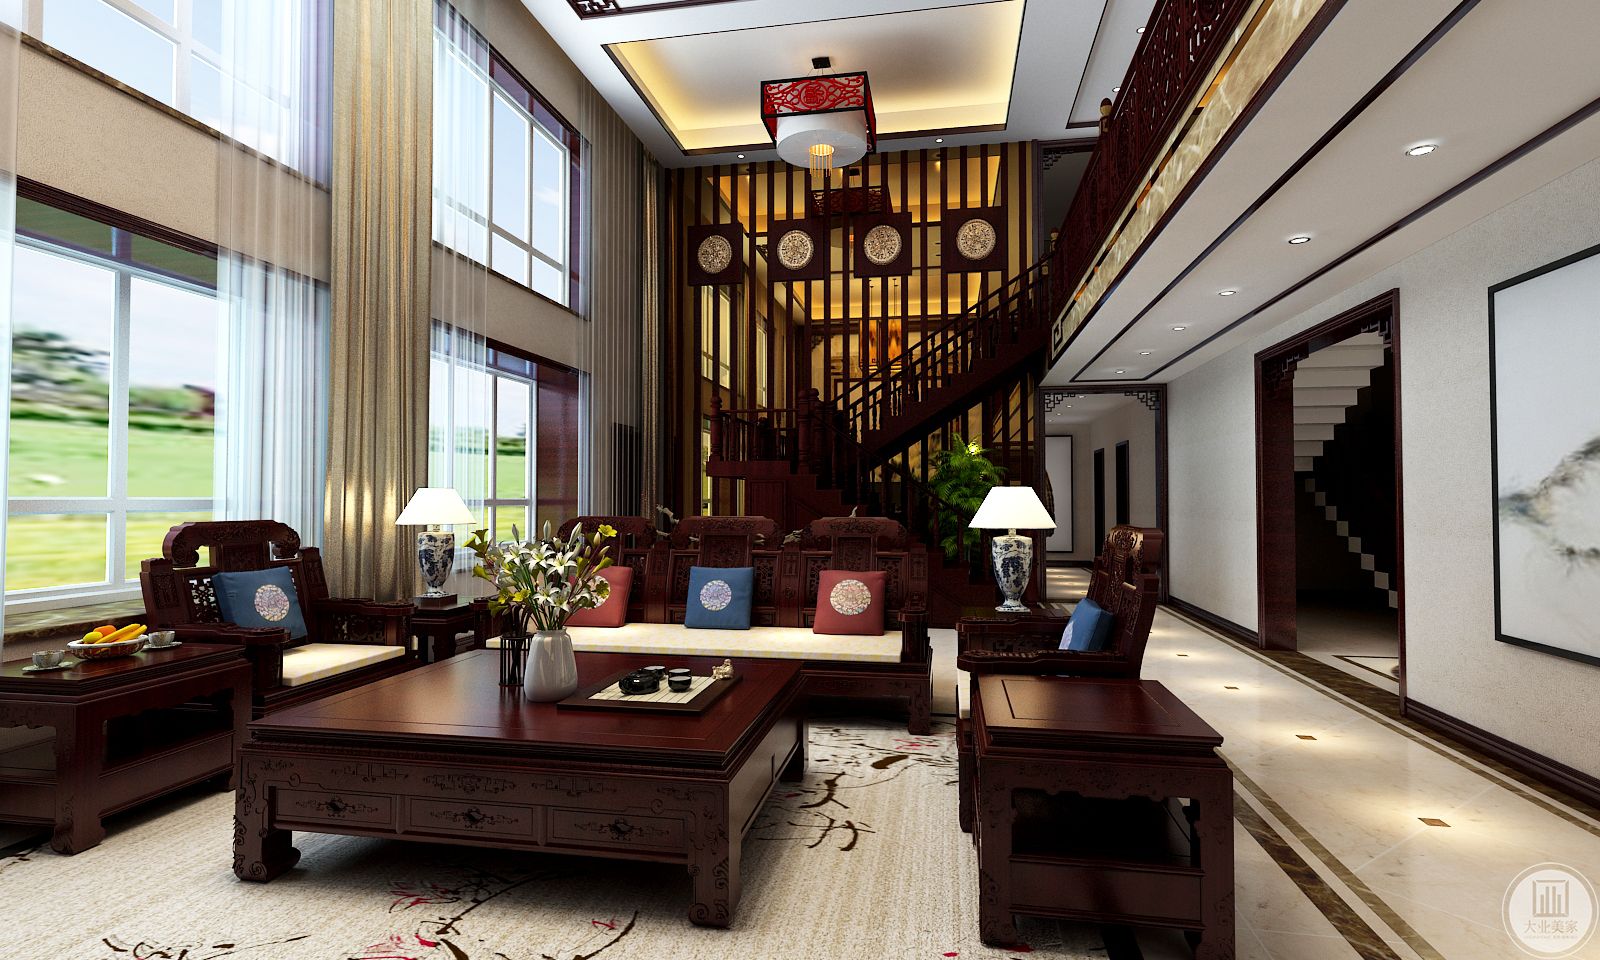 客厅装修效果图：地面铺设浅色瓷砖搭配浅色地毯，沙发茶几都采用红木制作，沙发后是红木隔断，隔开客厅和楼梯间。